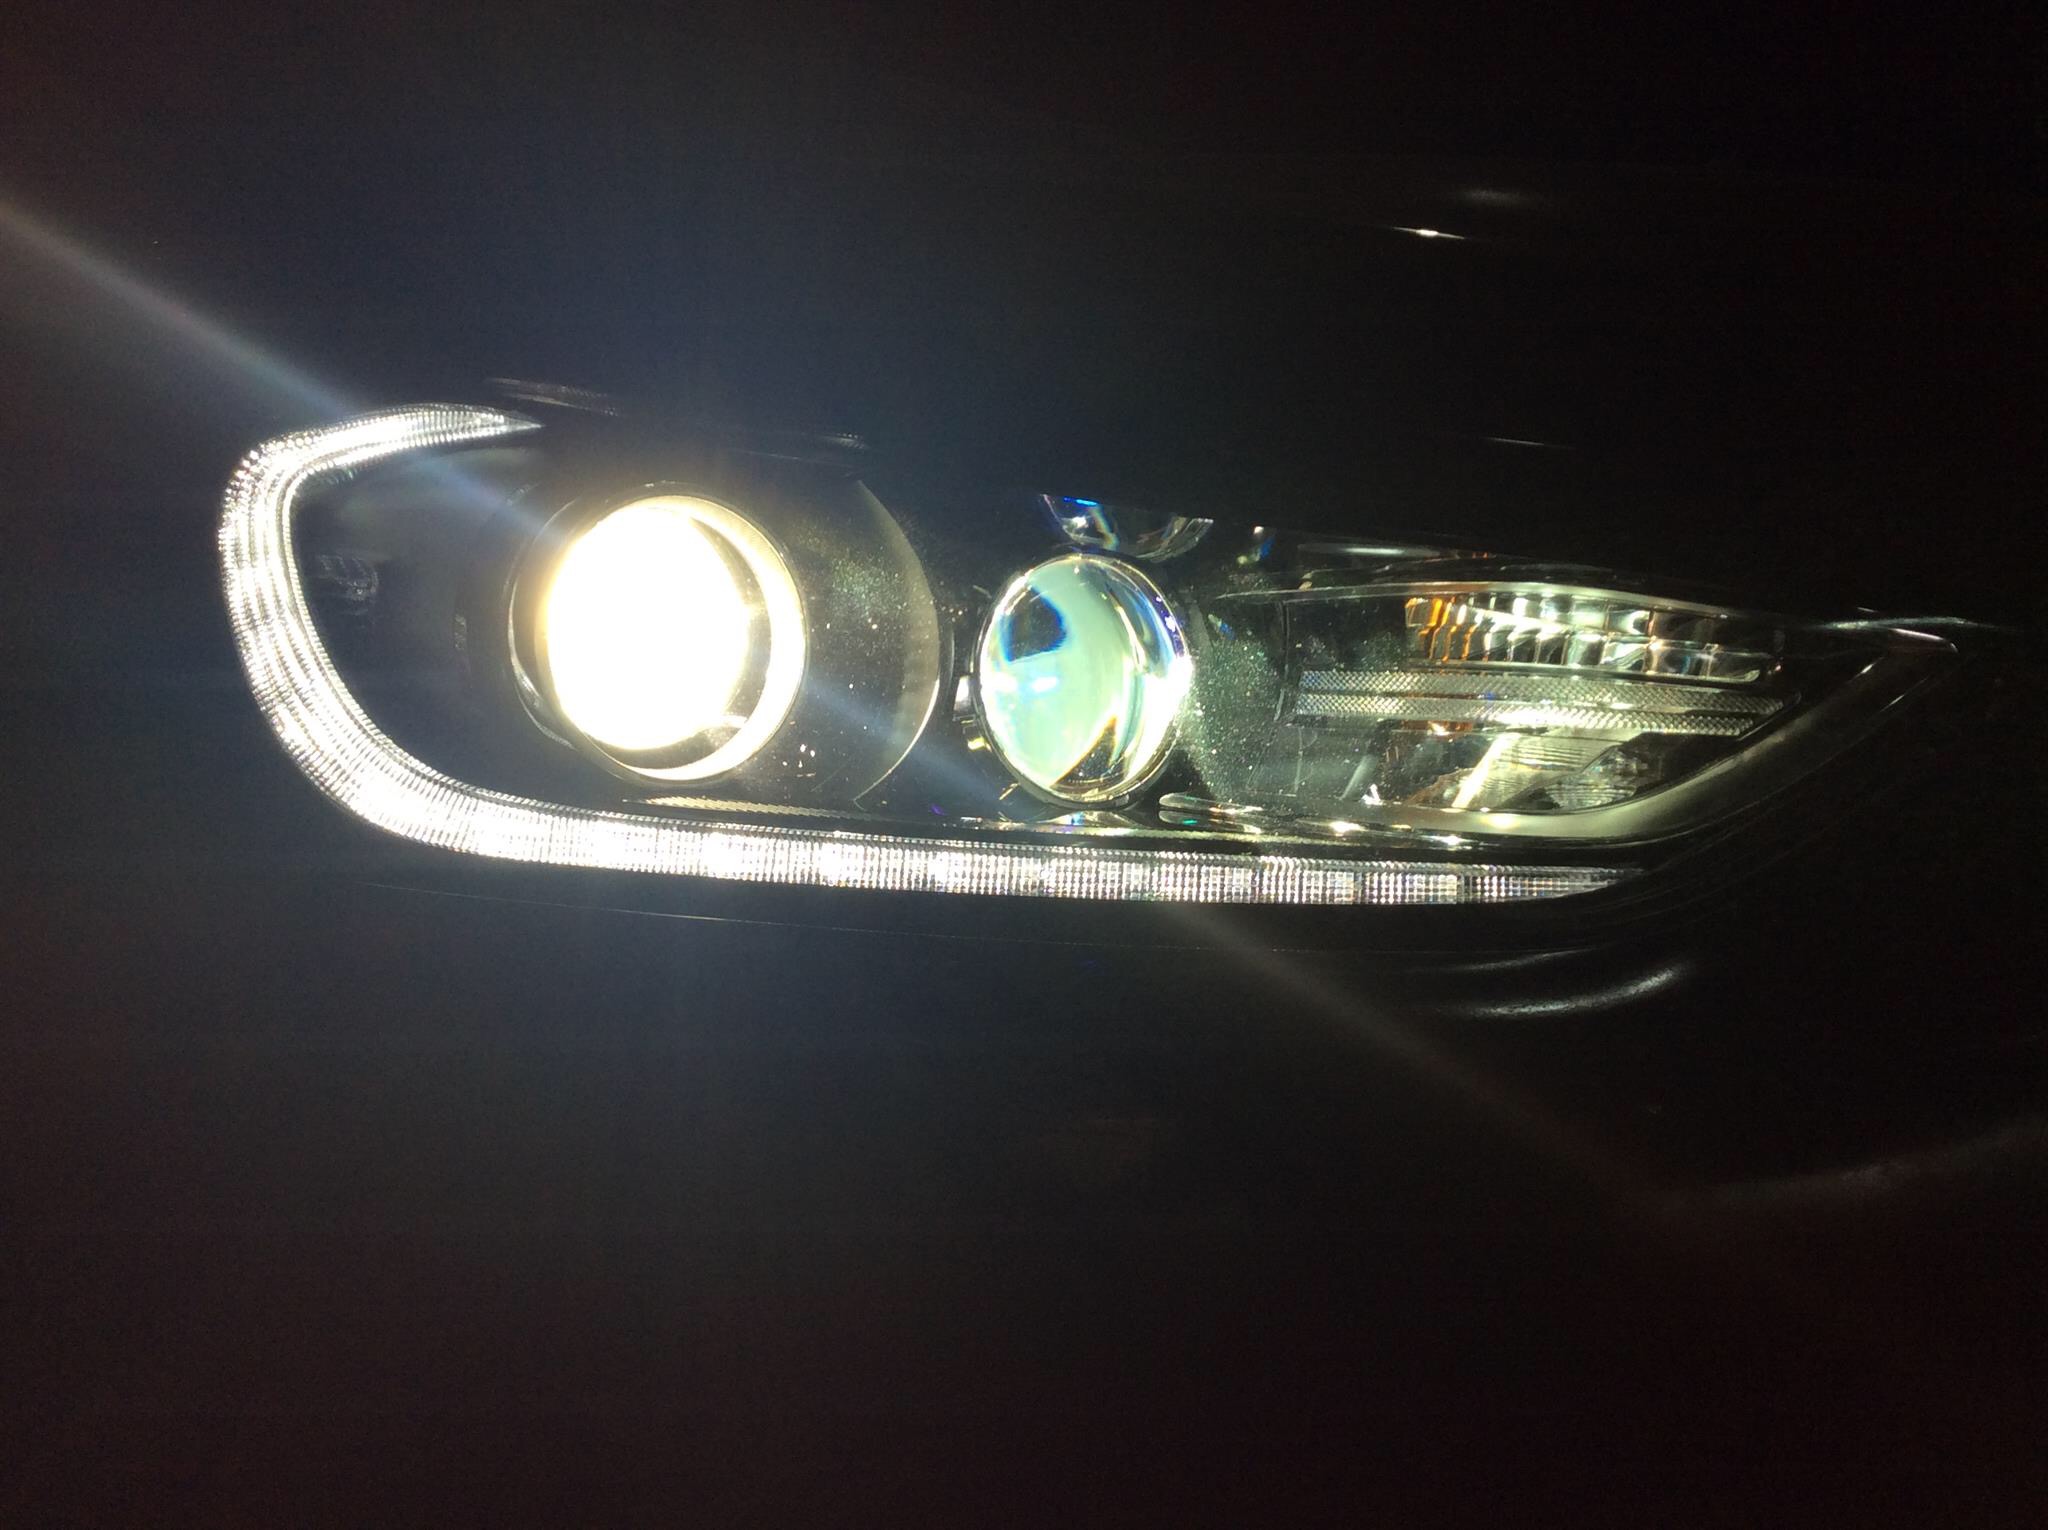 Hyundai Elantra 2016 độ bi hella5, bi domax bên pha, mắt quỷ đỏ